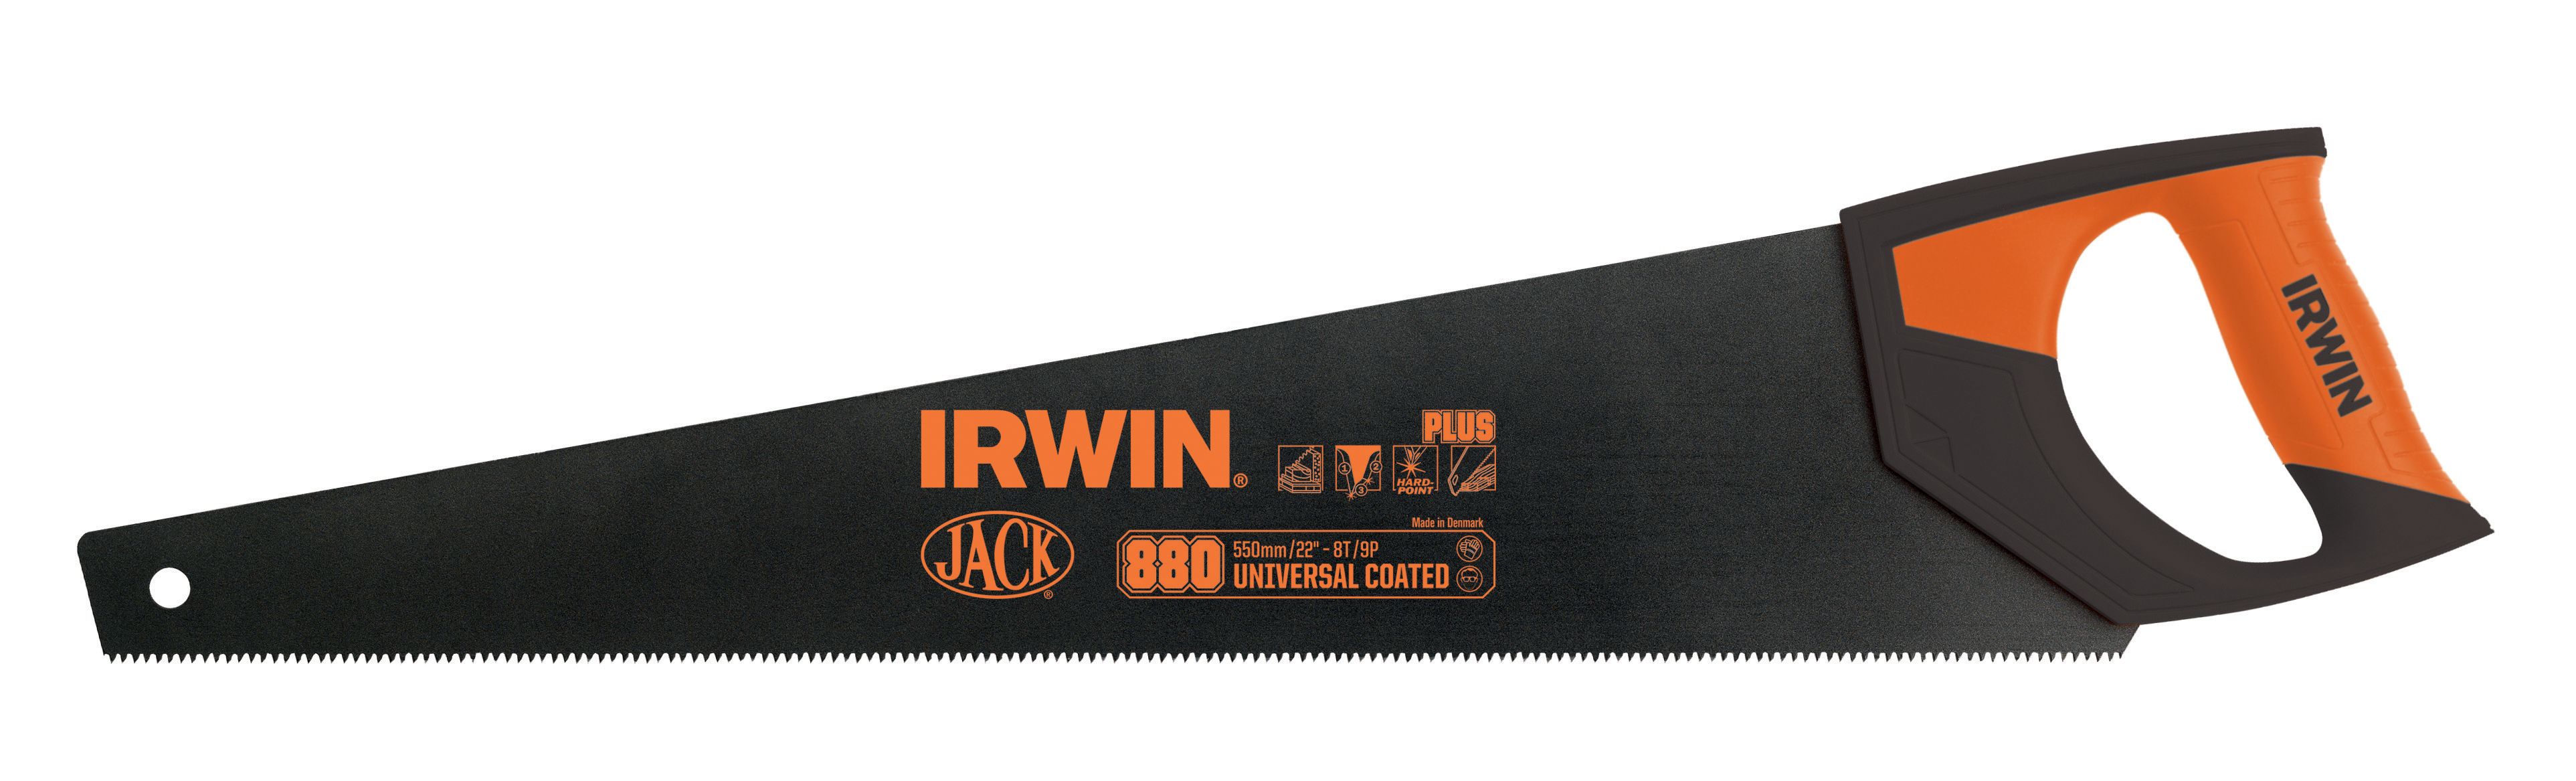 Irwin 1897525 Jack 880 Coated Handsaw - 20in